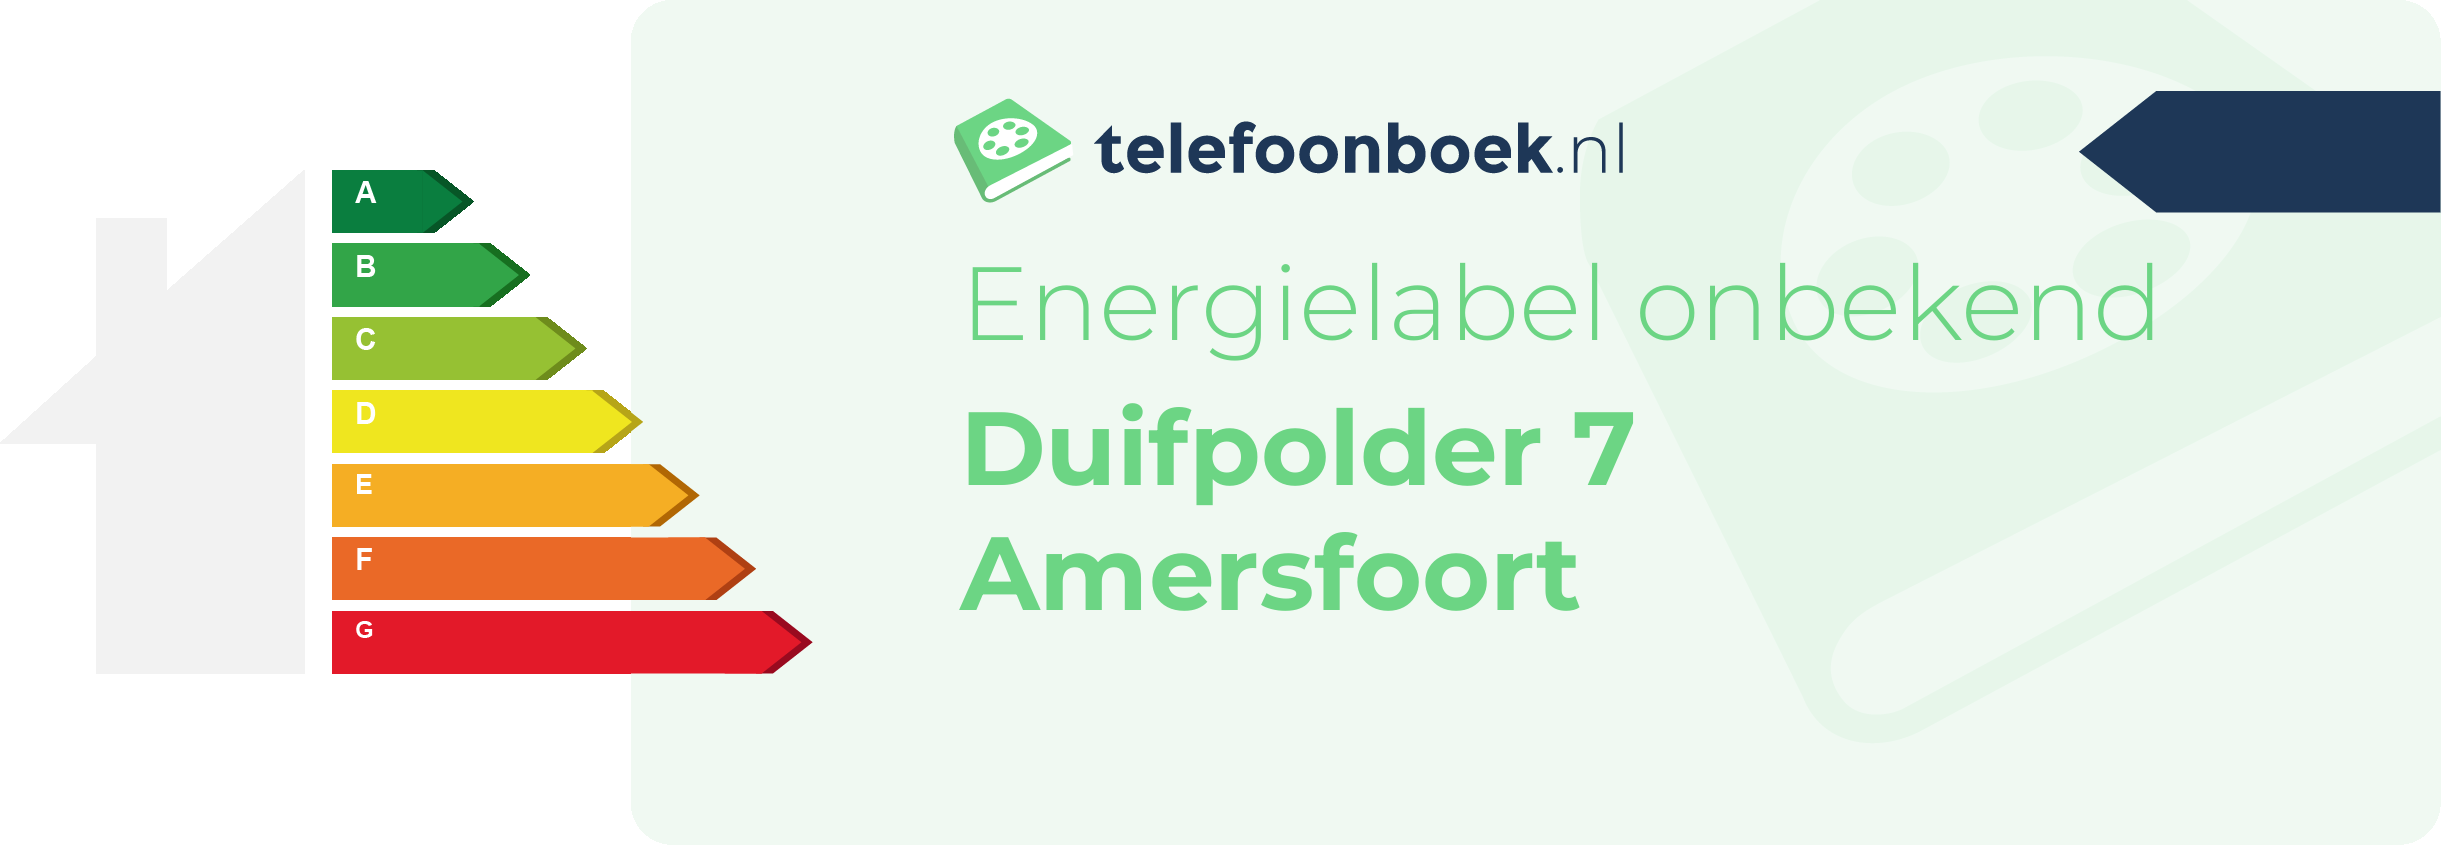 Energielabel Duifpolder 7 Amersfoort